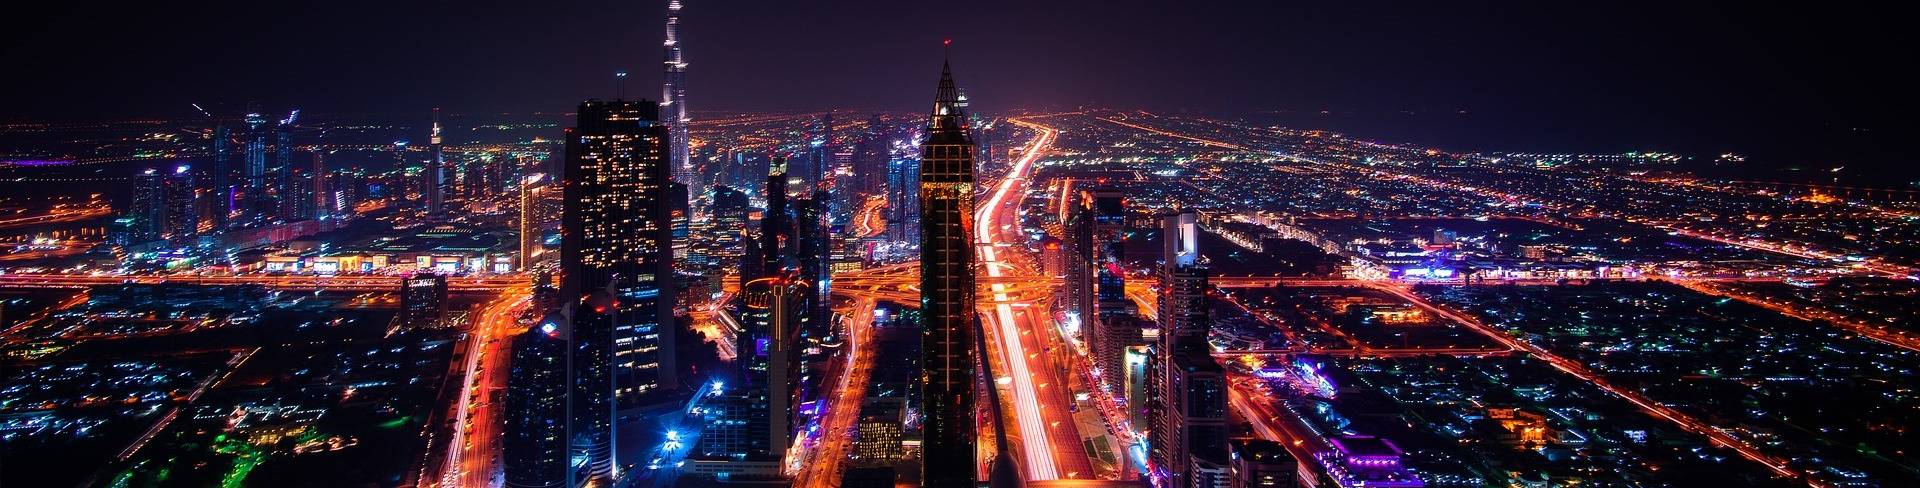 Дубай - город в ОАЭ